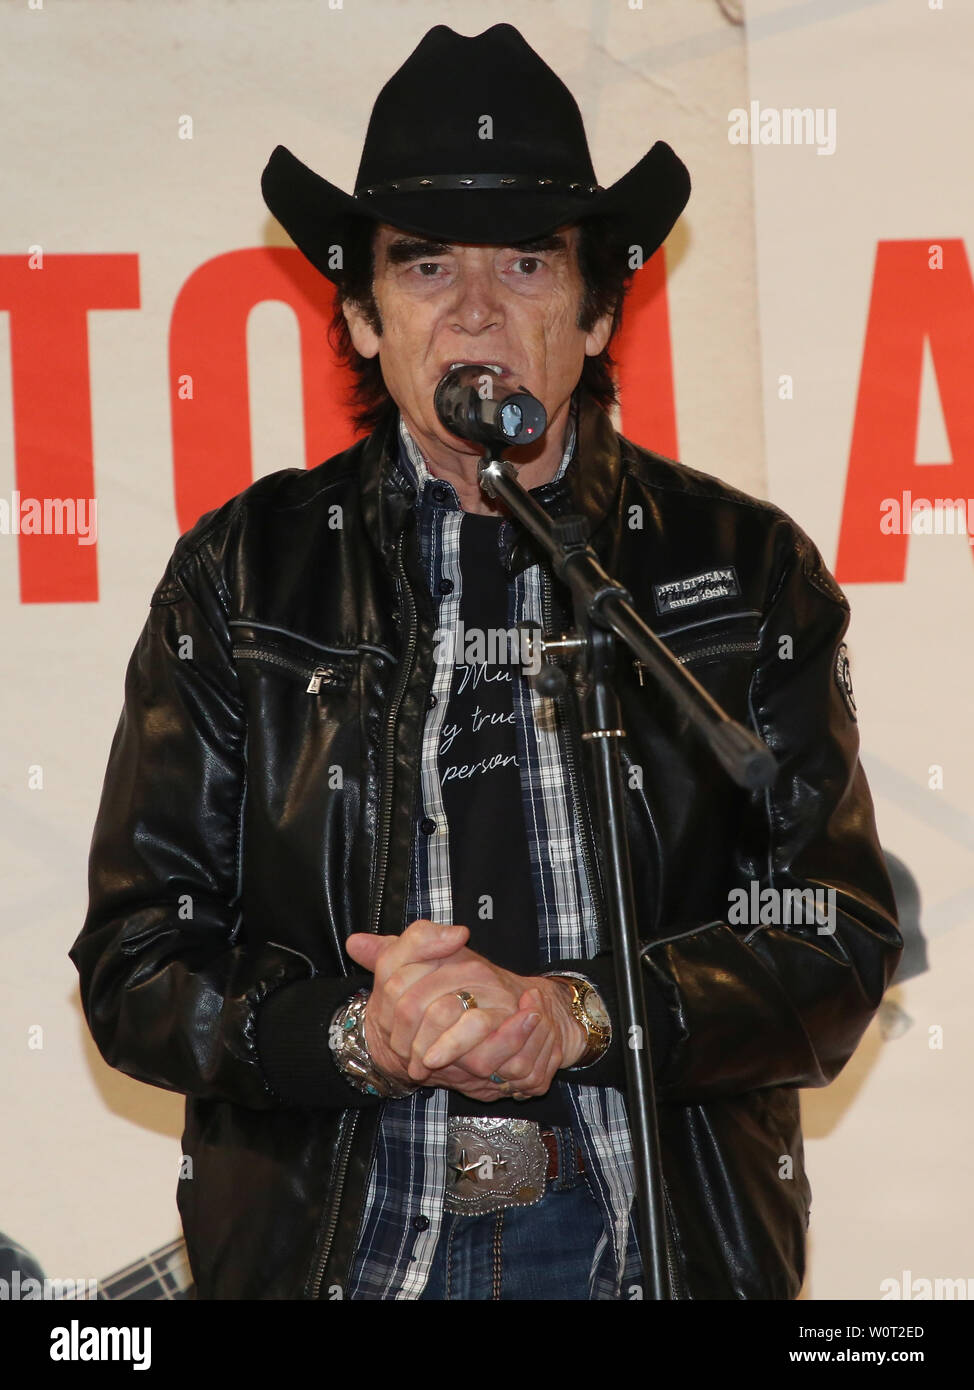 Tom Astor bei einem Live-Auftritt mit Autogrammstunde am 03.03.2018 in Magdeburg Stock Photo